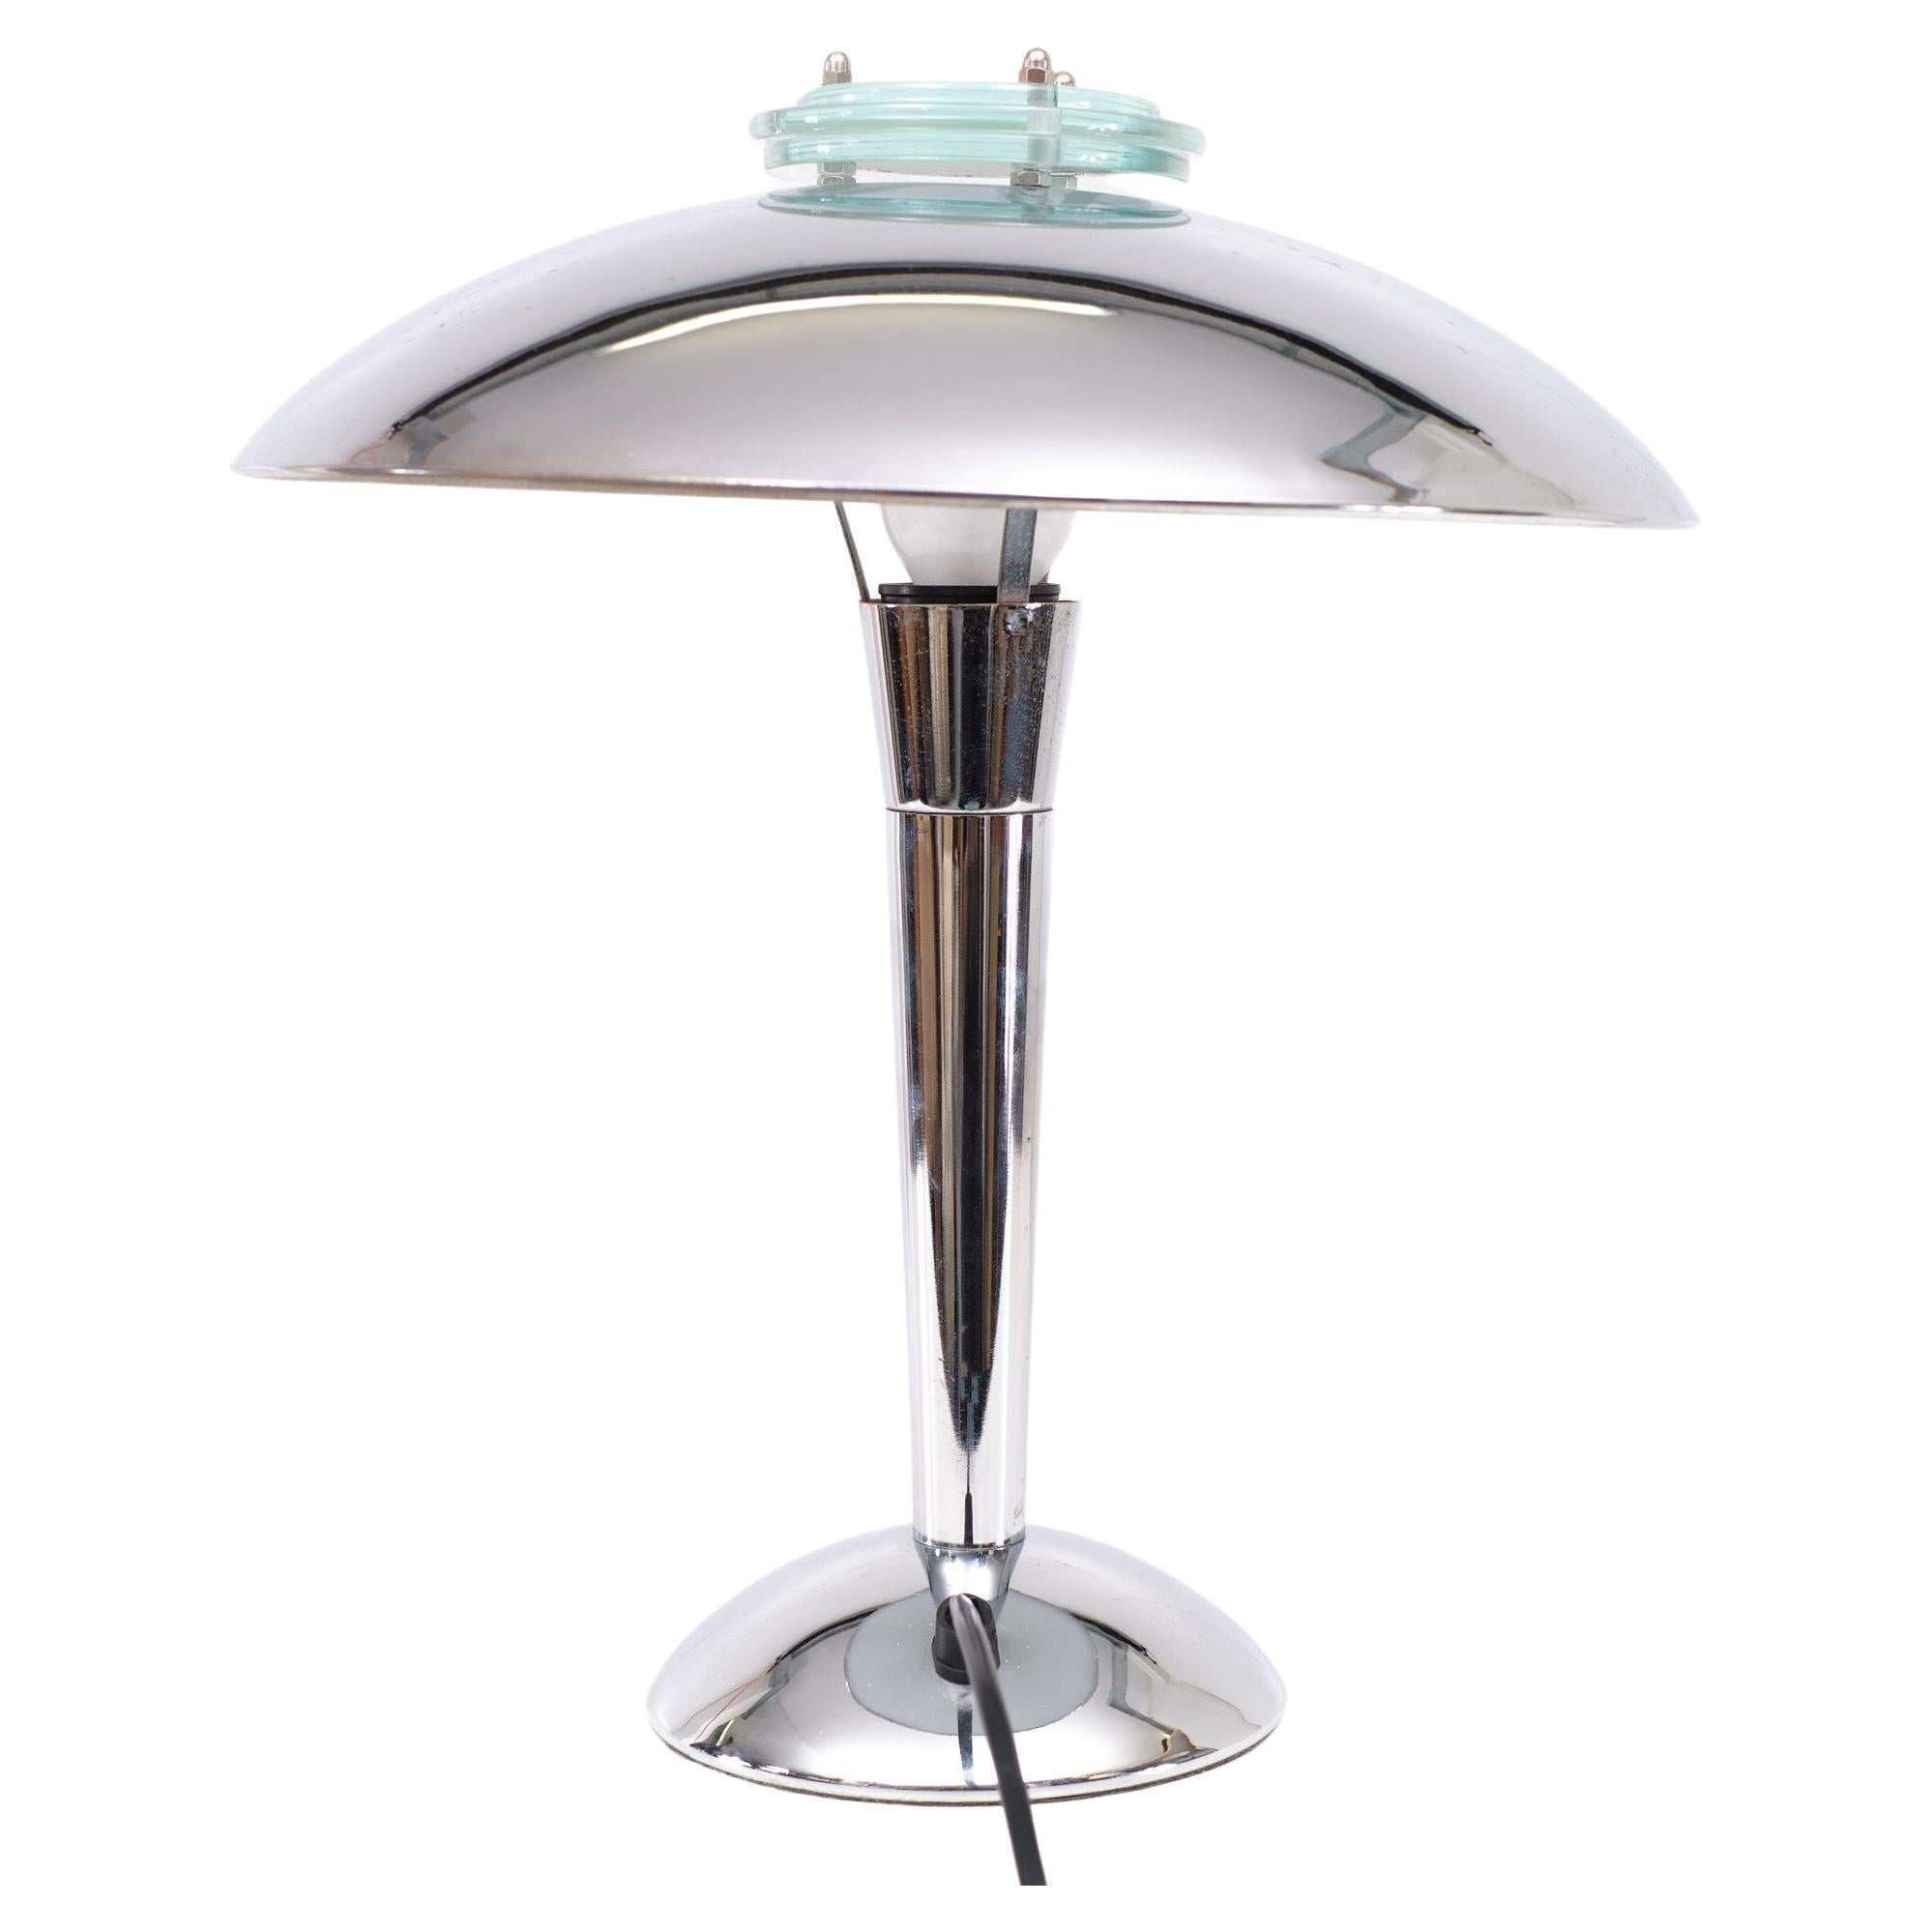 Chrom-Tischlampe Modell Tokyo im Bauhaus-Stil . Kommt mit drei runden Gläsern 
Das gibt dem Licht einen schönen diffusen Effekt. 
Entworfen in den frühen 1980er Jahren  von  W.K. WU-Produkte. Große E27-Glühbirne erforderlich. 
